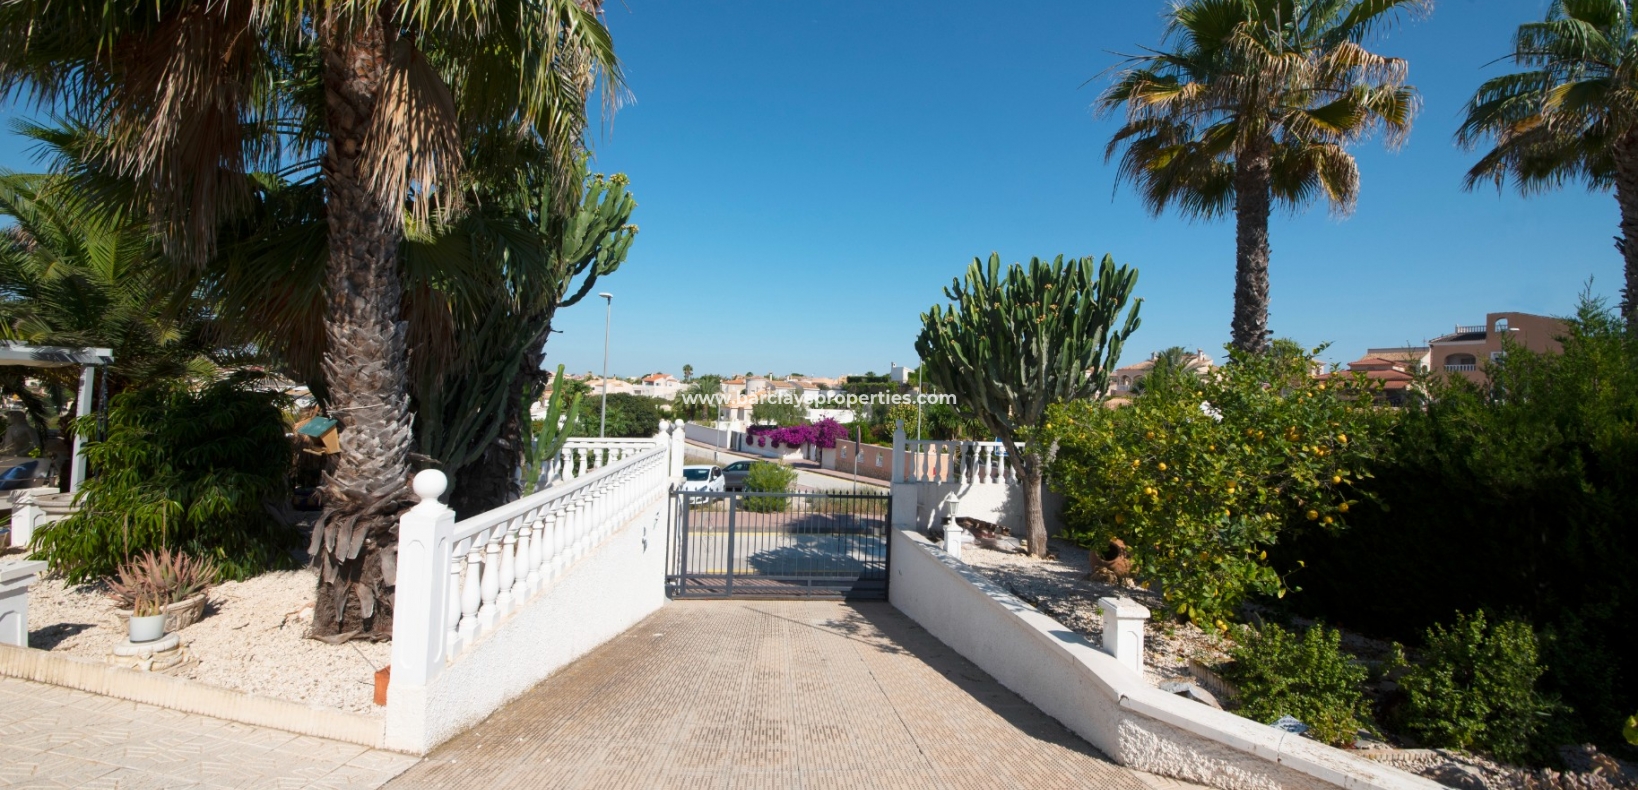 Driveway - Prestige Villa For Sale in Urbanisation La Escuera, Alicante